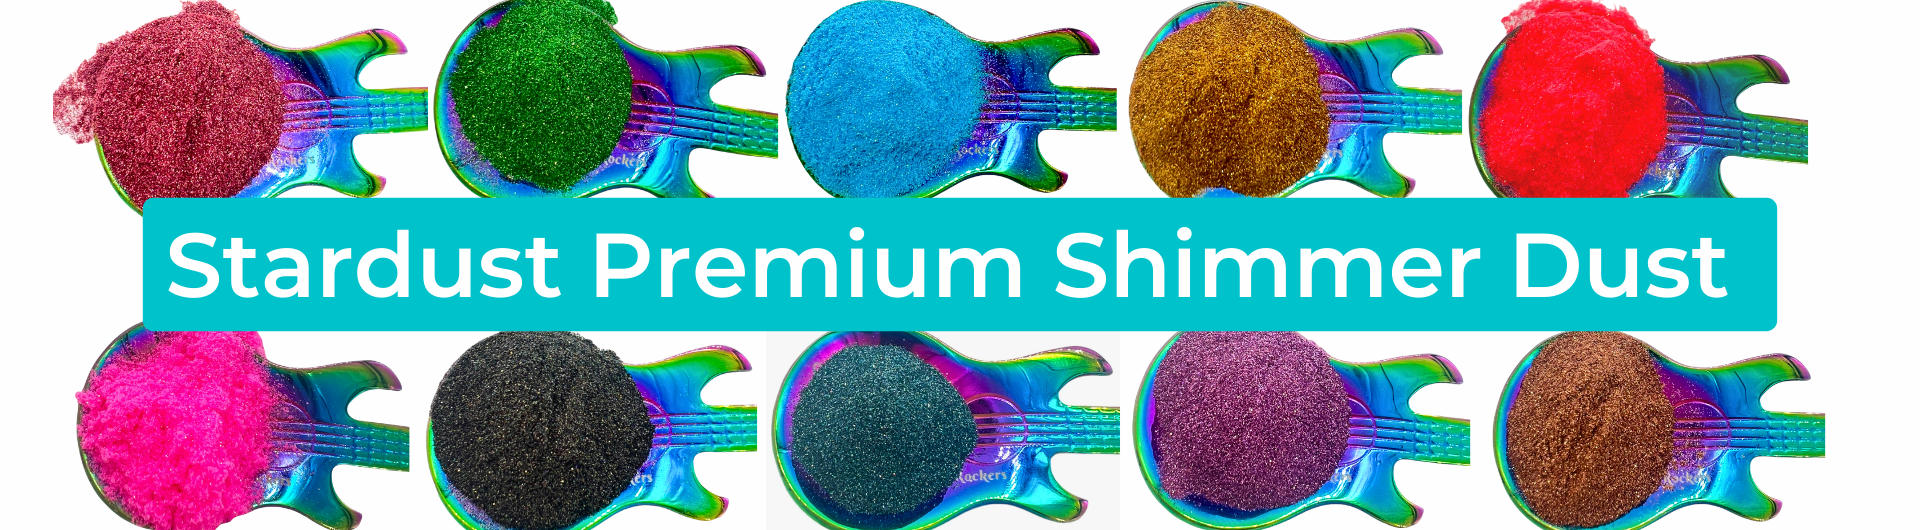 Stardust Premium Shimmer Dust